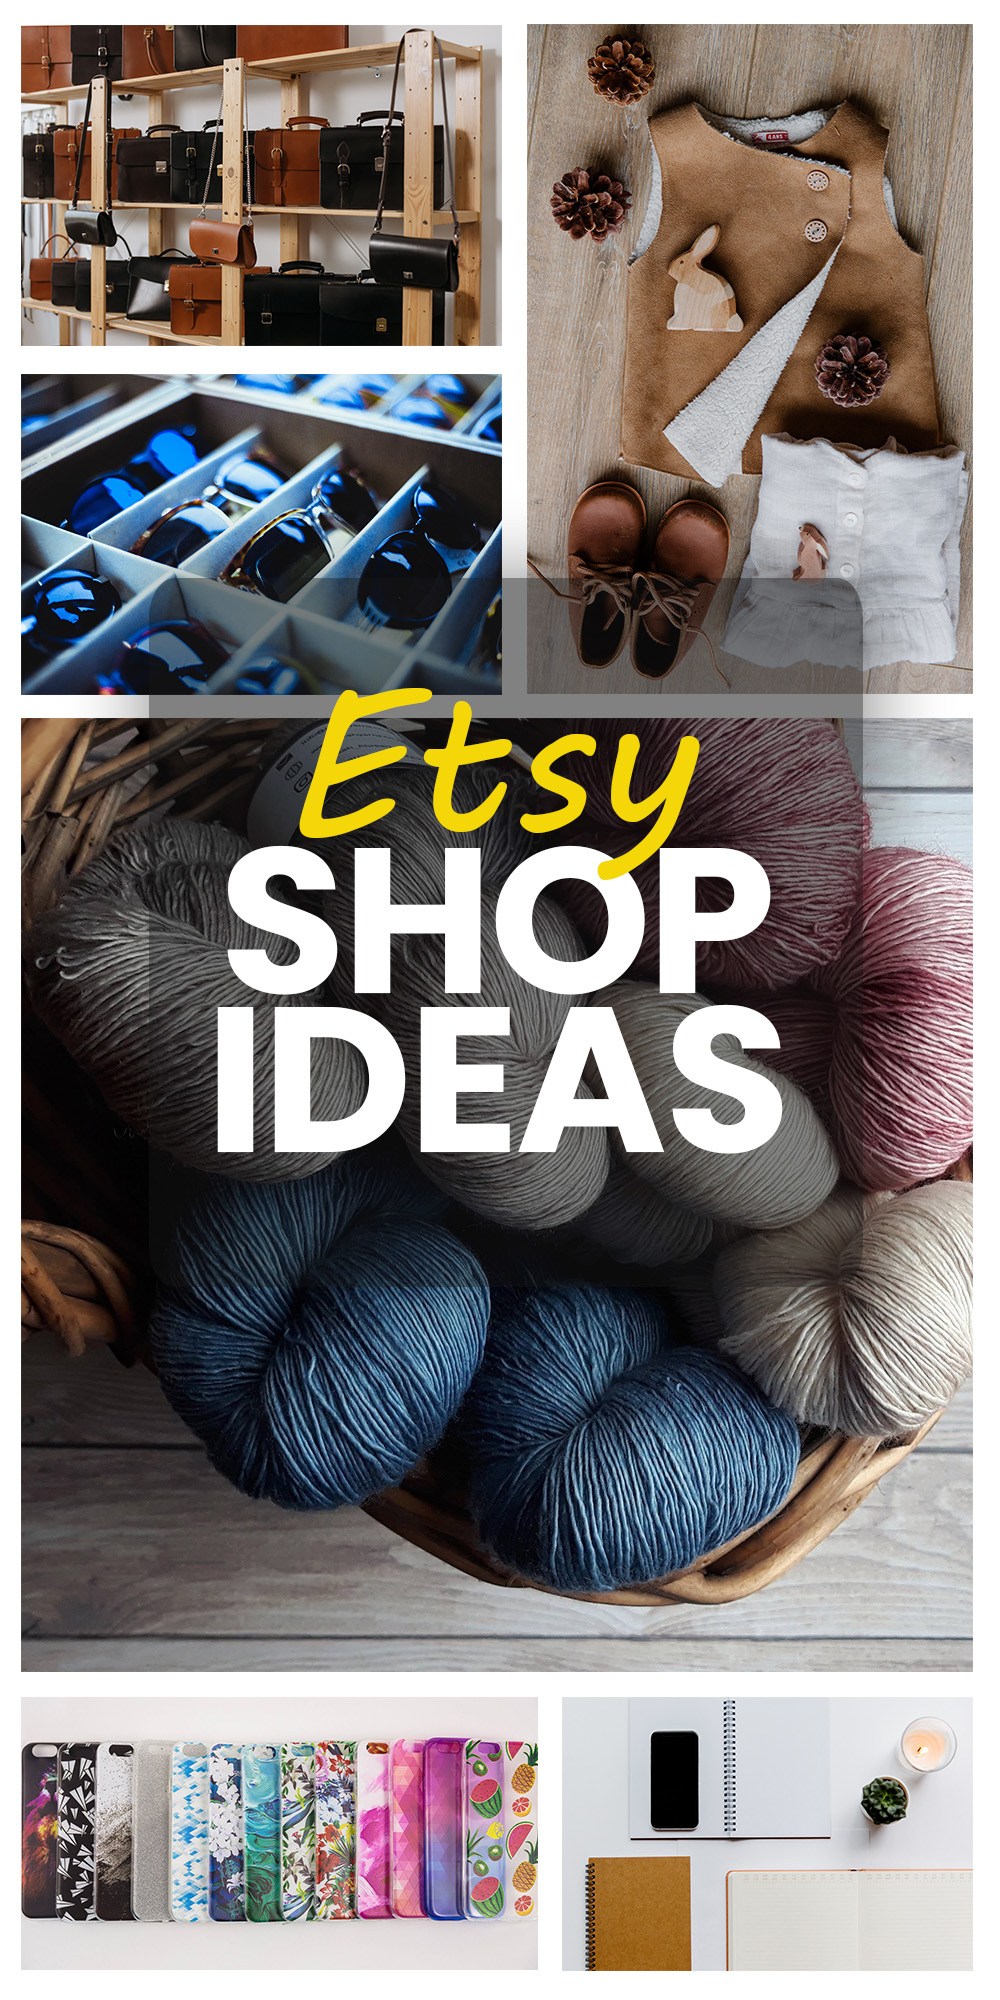 Etsy Shop Ideas